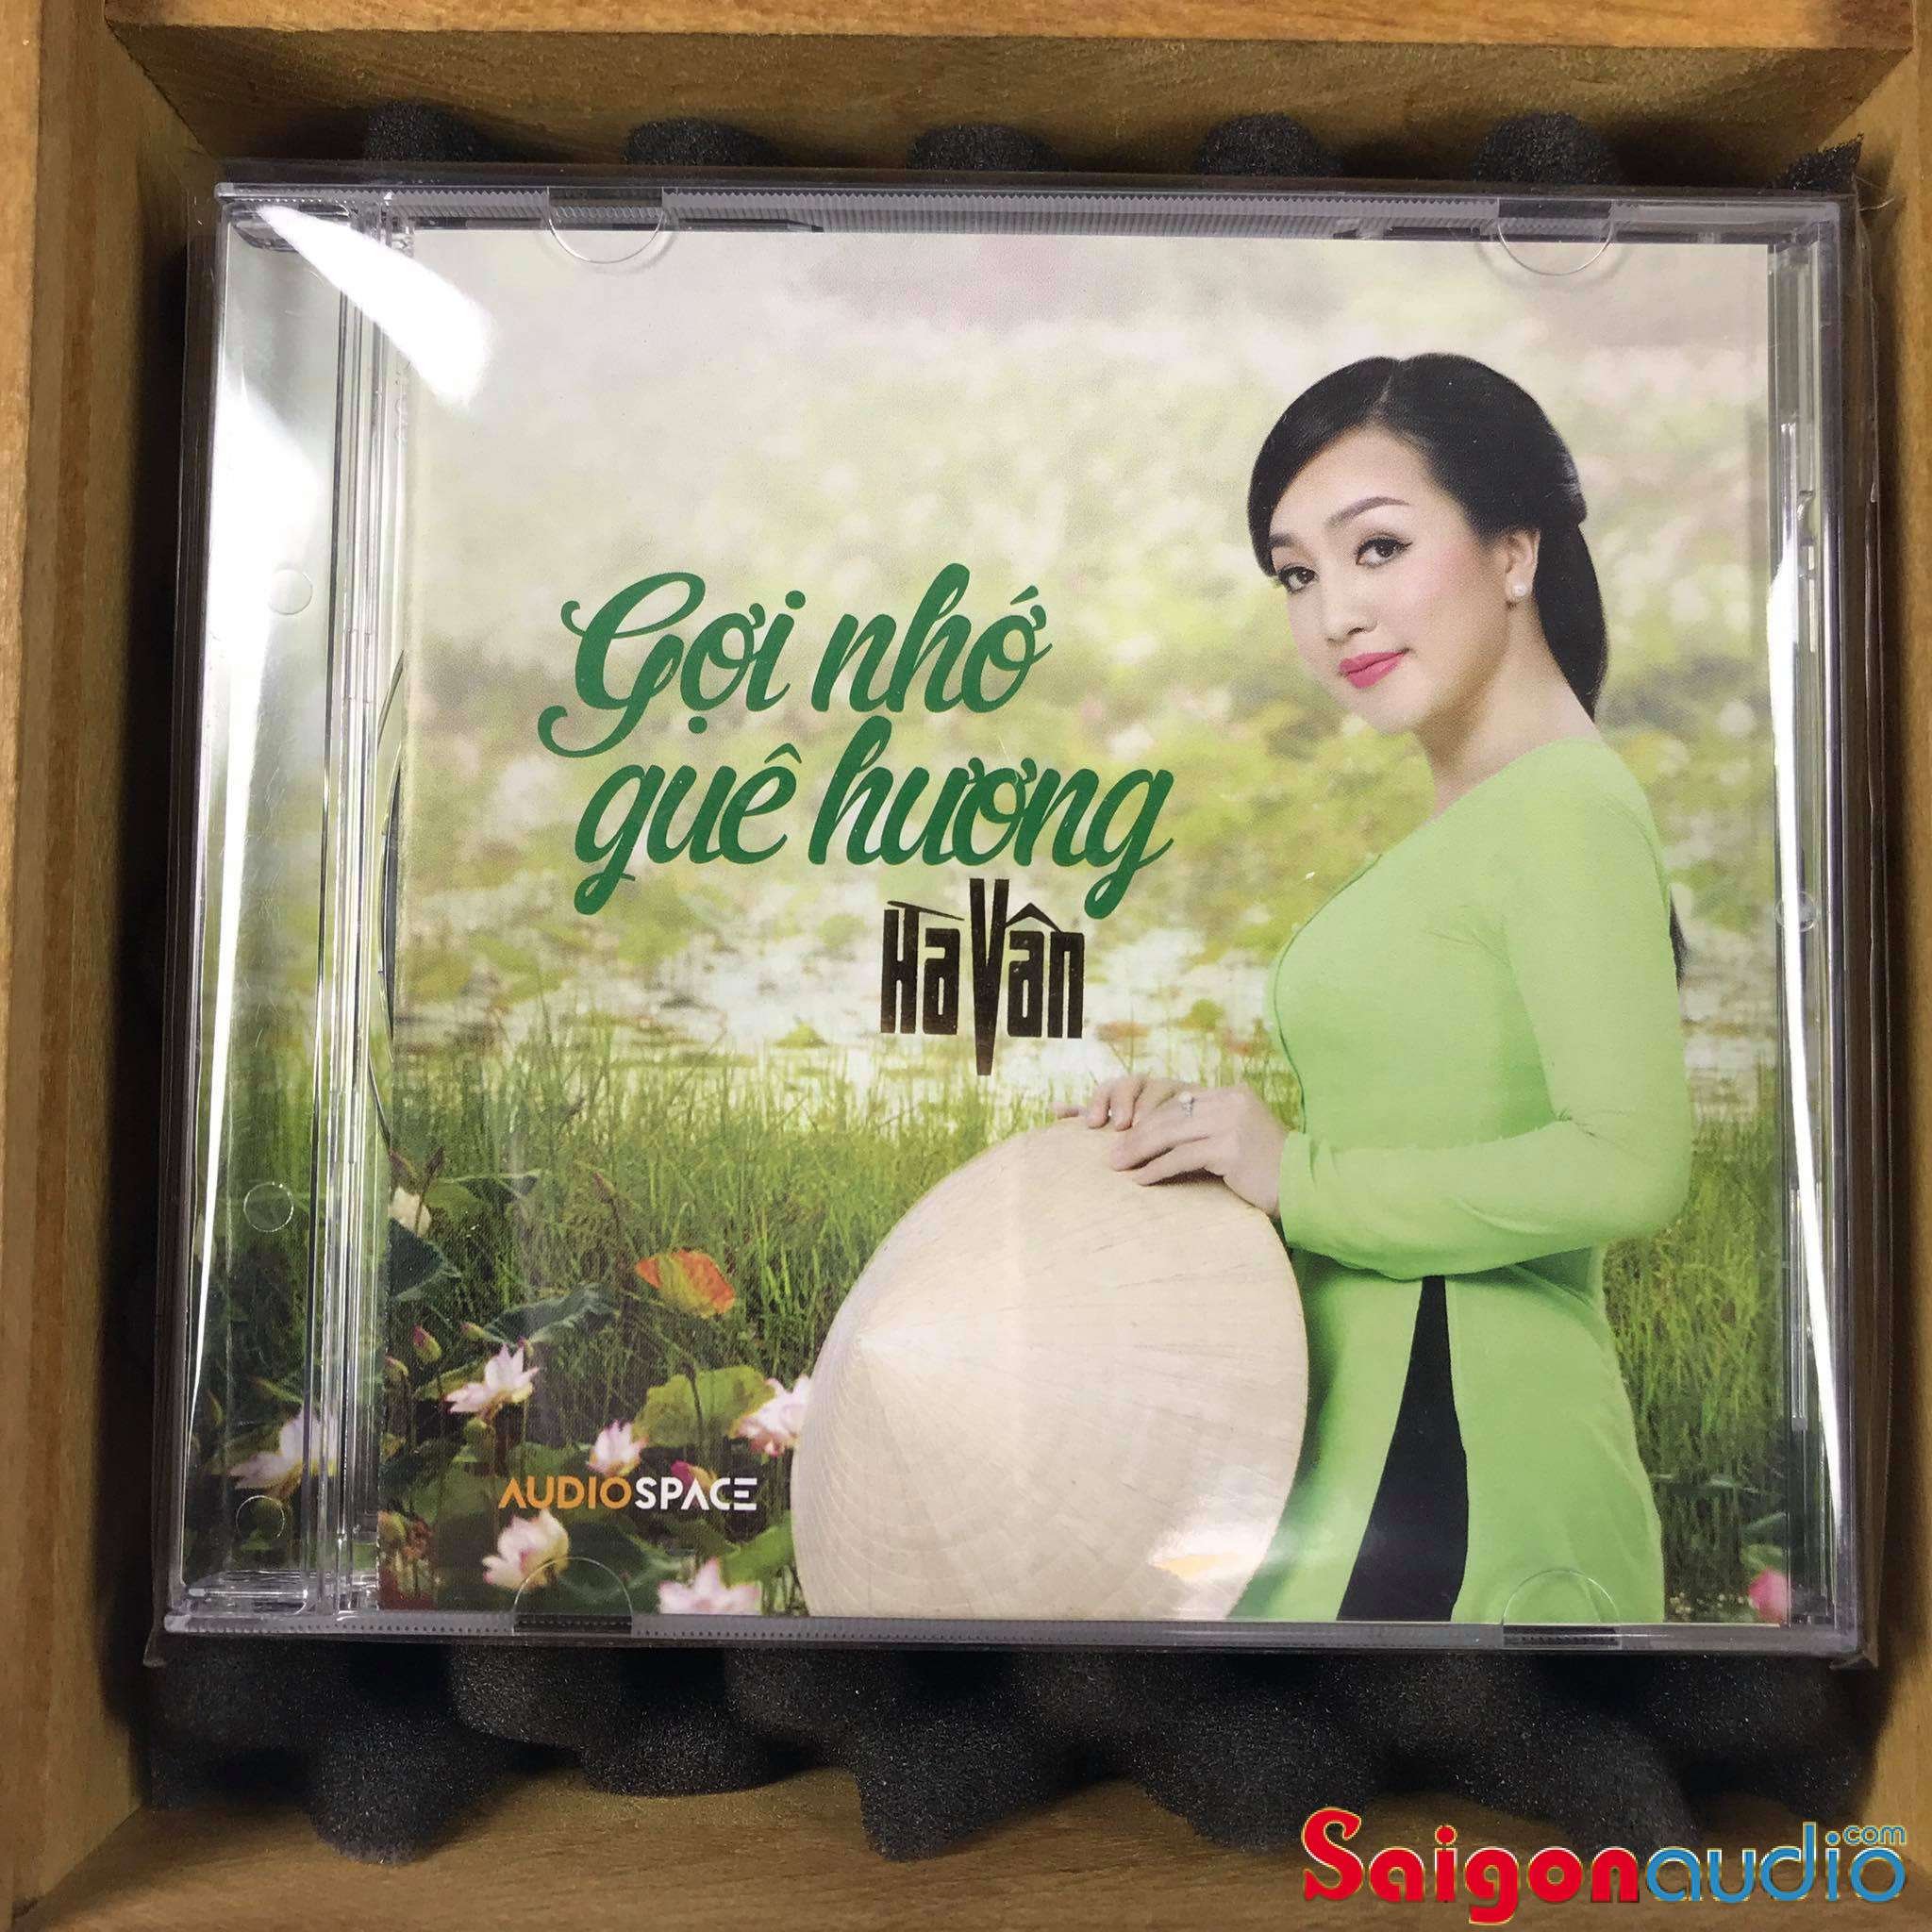 Đĩa CD gốc Tiếng Hát Hà Vân - Gợi Nhớ Quê Hương (Free ship khi mua 2 đĩa CD cùng hoặc khác loại)